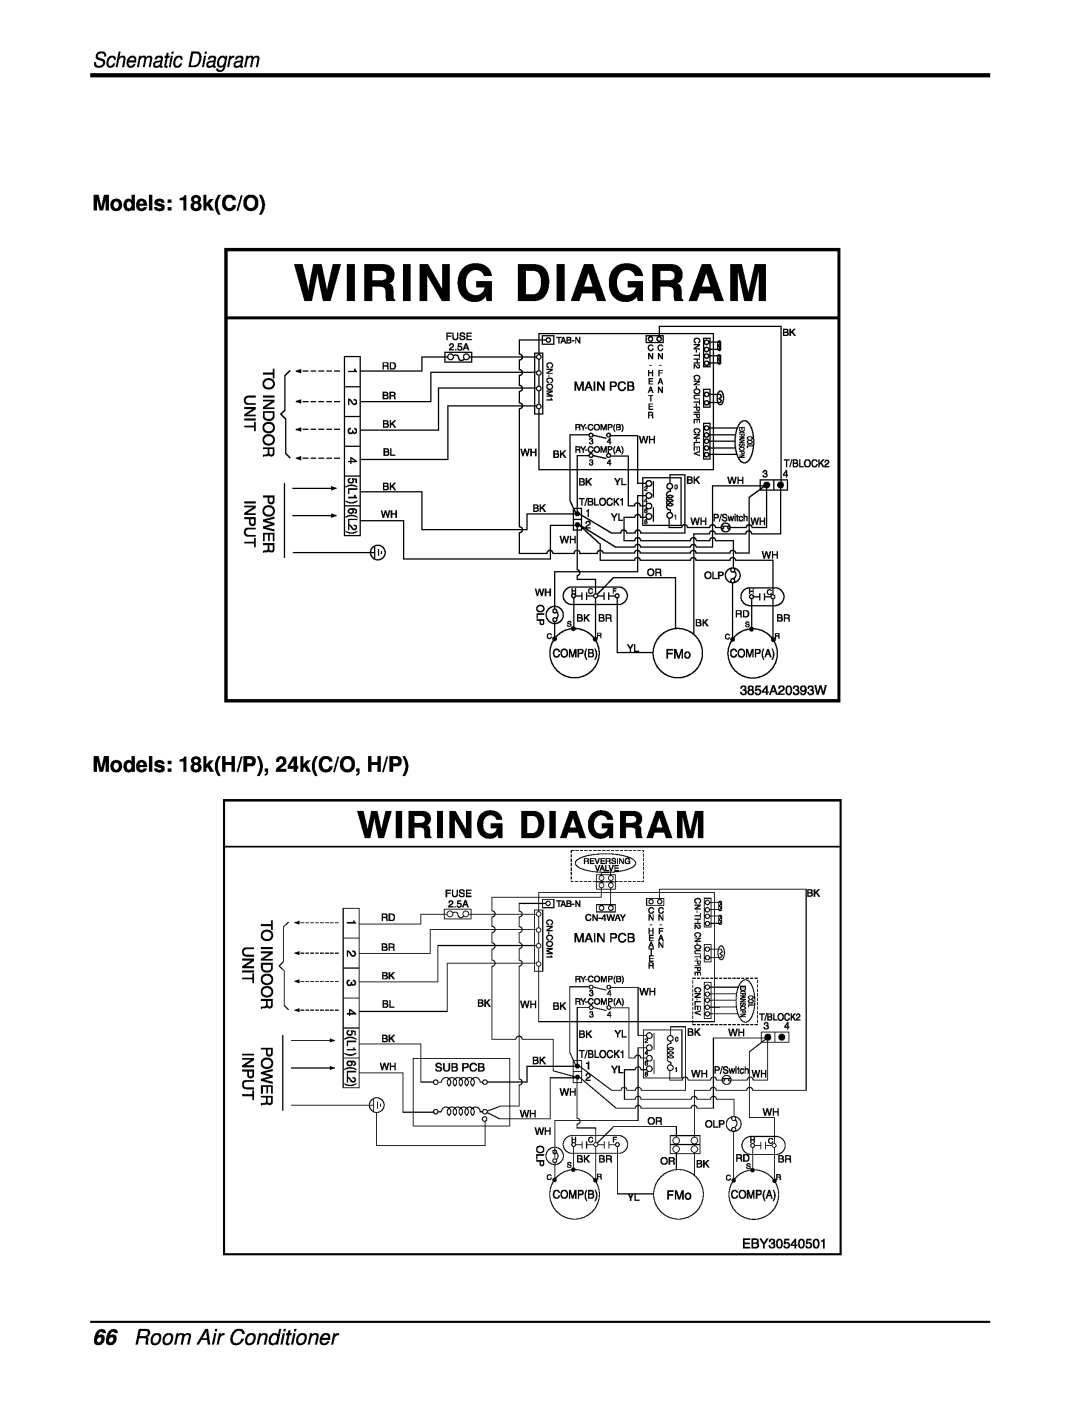 Heat Controller DMC09SB-0, DMC18SB-1 Models 18kC/O, Models 18kH/P, 24kC/O, H/P, 66Room Air Conditioner, Schematic Diagram 